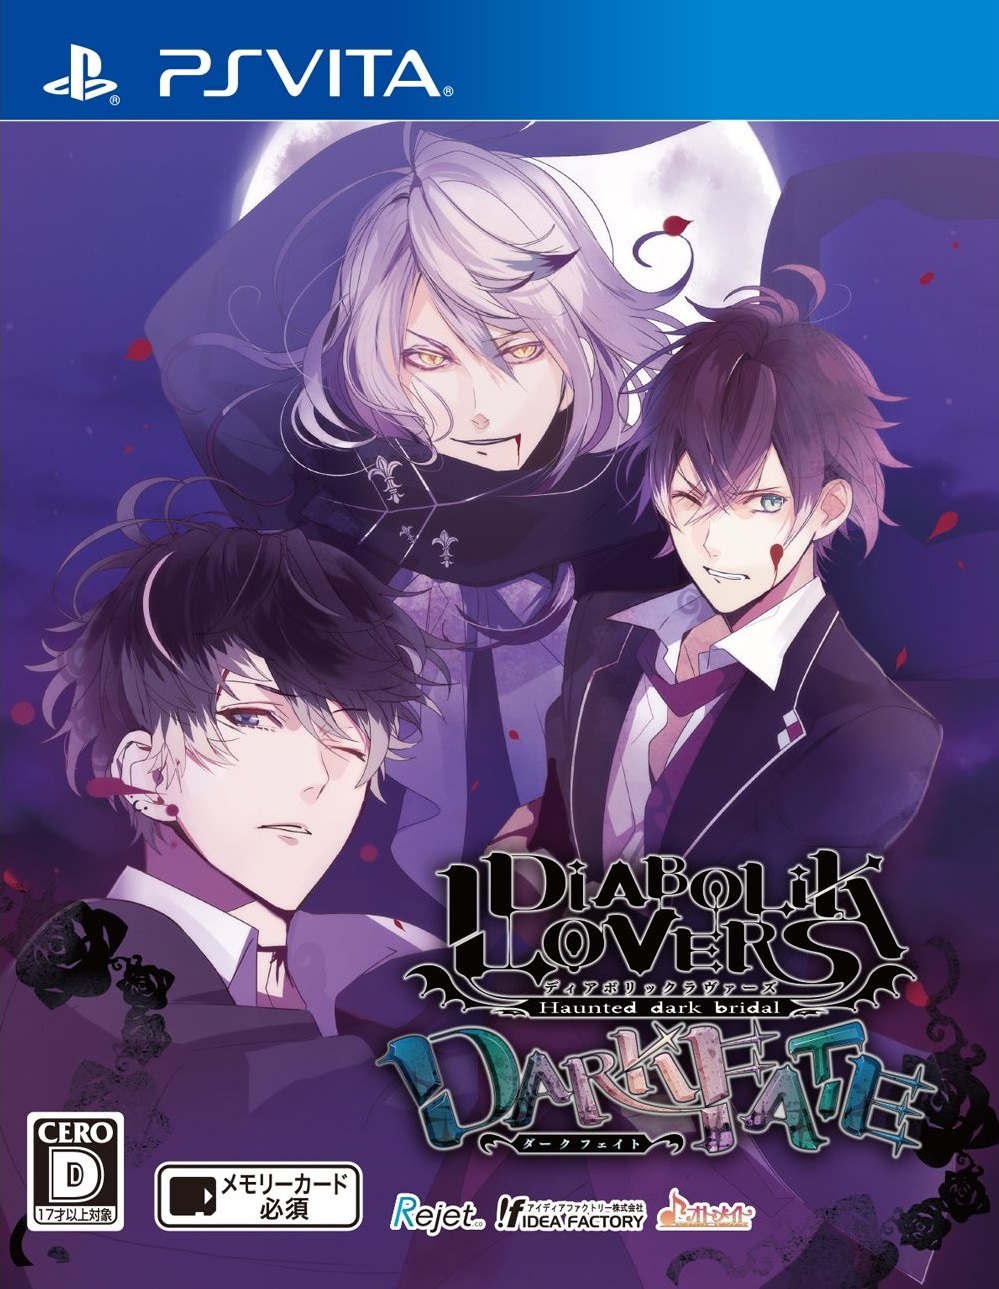 download diabolik lovers dark fate